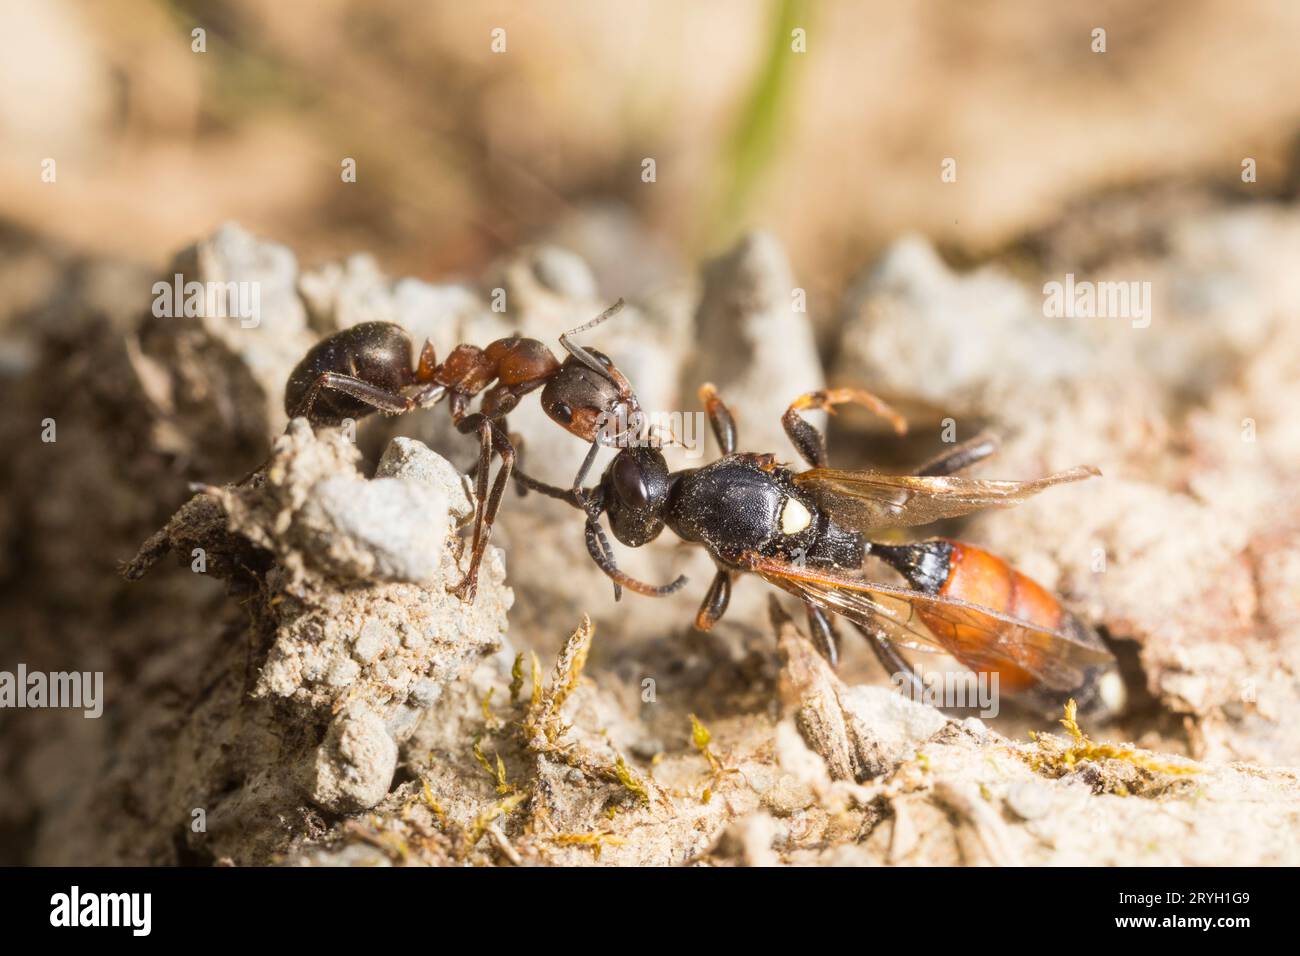 Travailleur de fourmis de bois poilu (Formica lugubris) traînant une guêpe ichneumon morte récupérée vers le nid. Shropshire. Angleterre. Mai. Banque D'Images